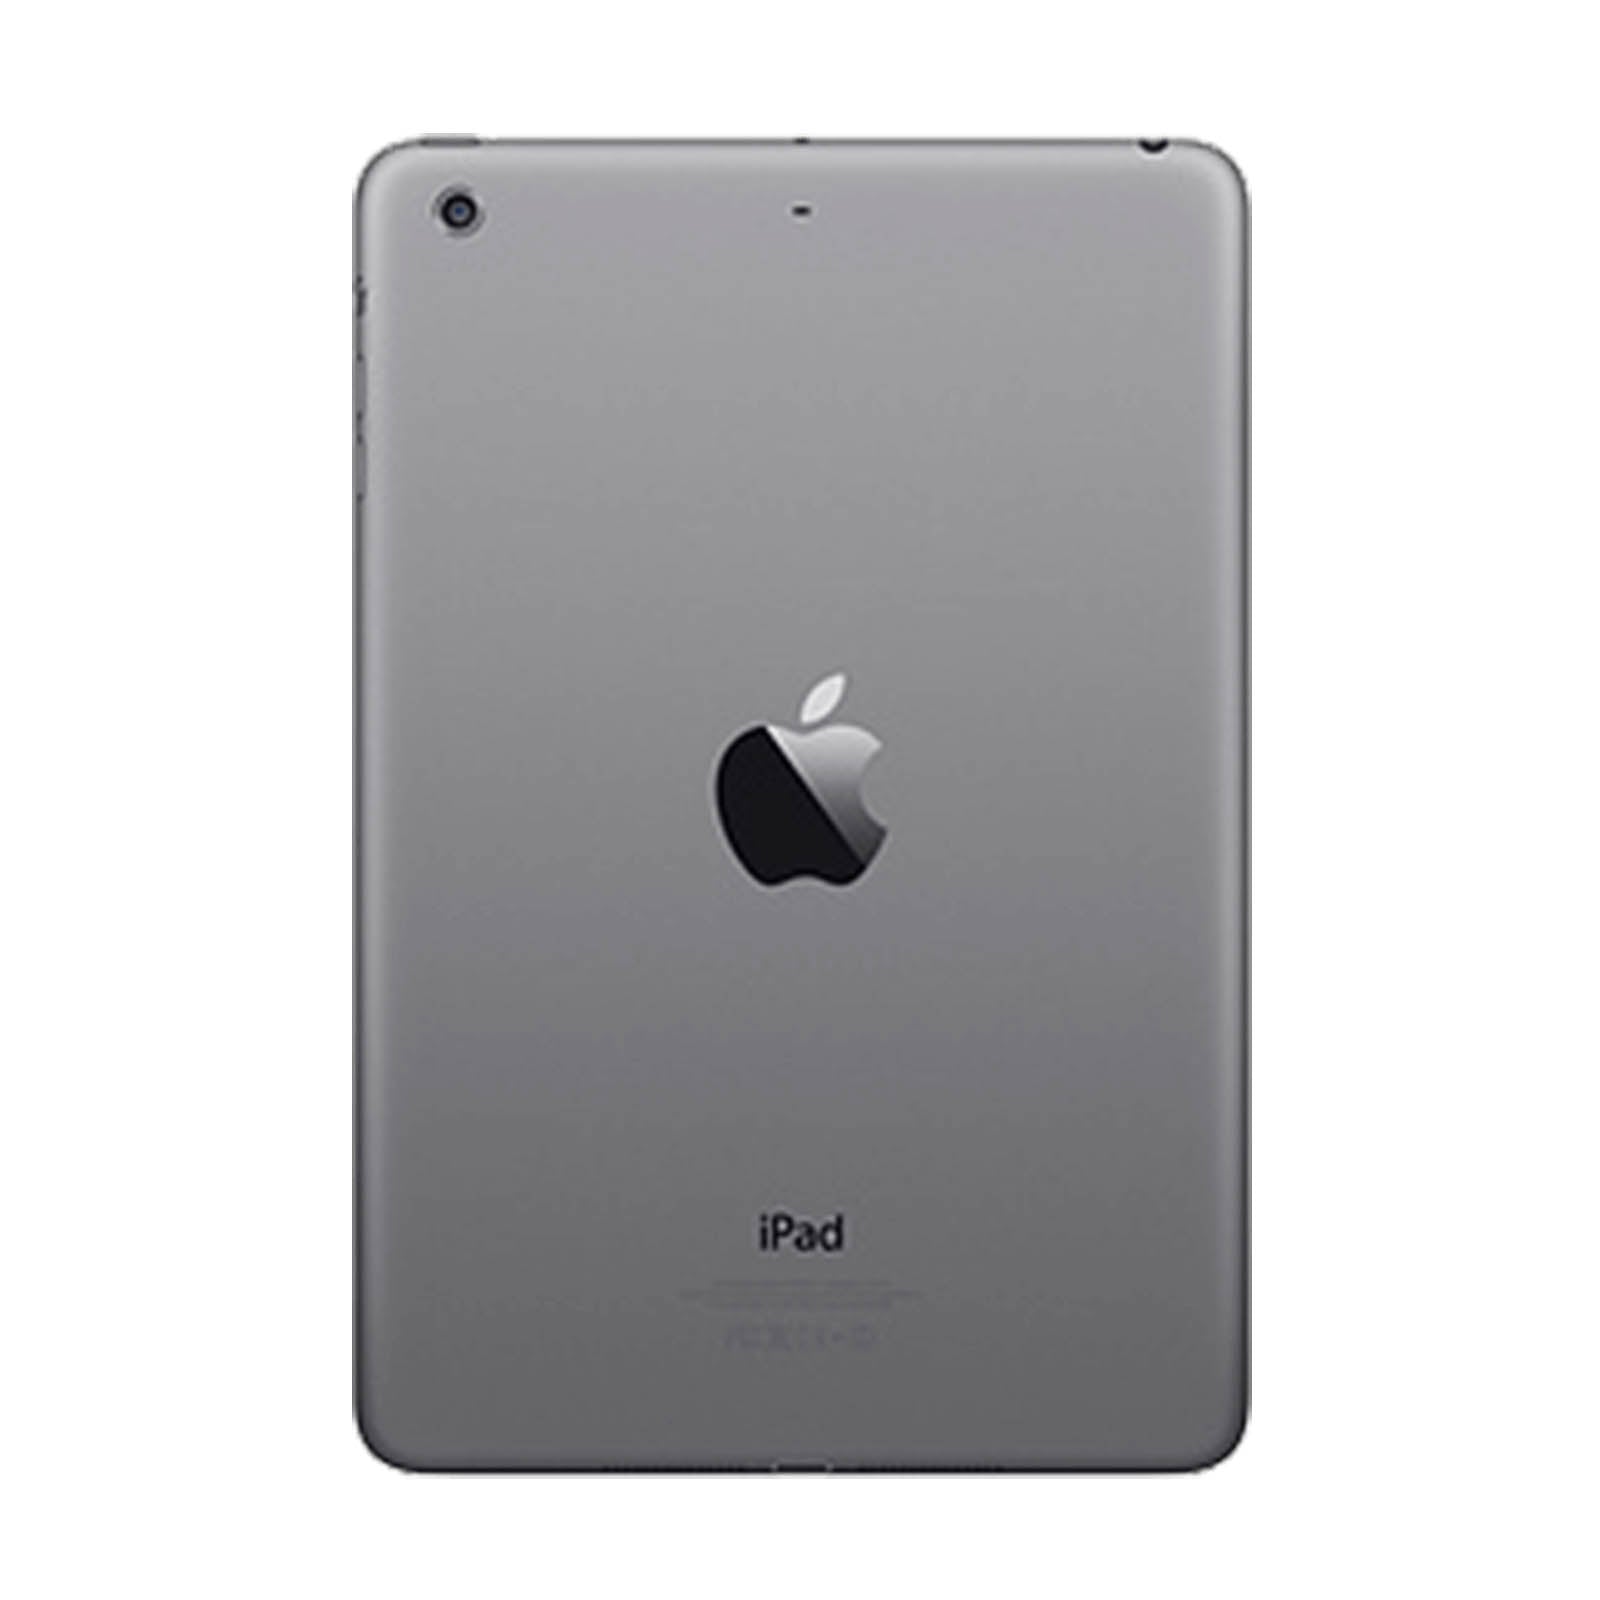 iPad Mini 2 32GB WiFi -Space Grey -Very Good